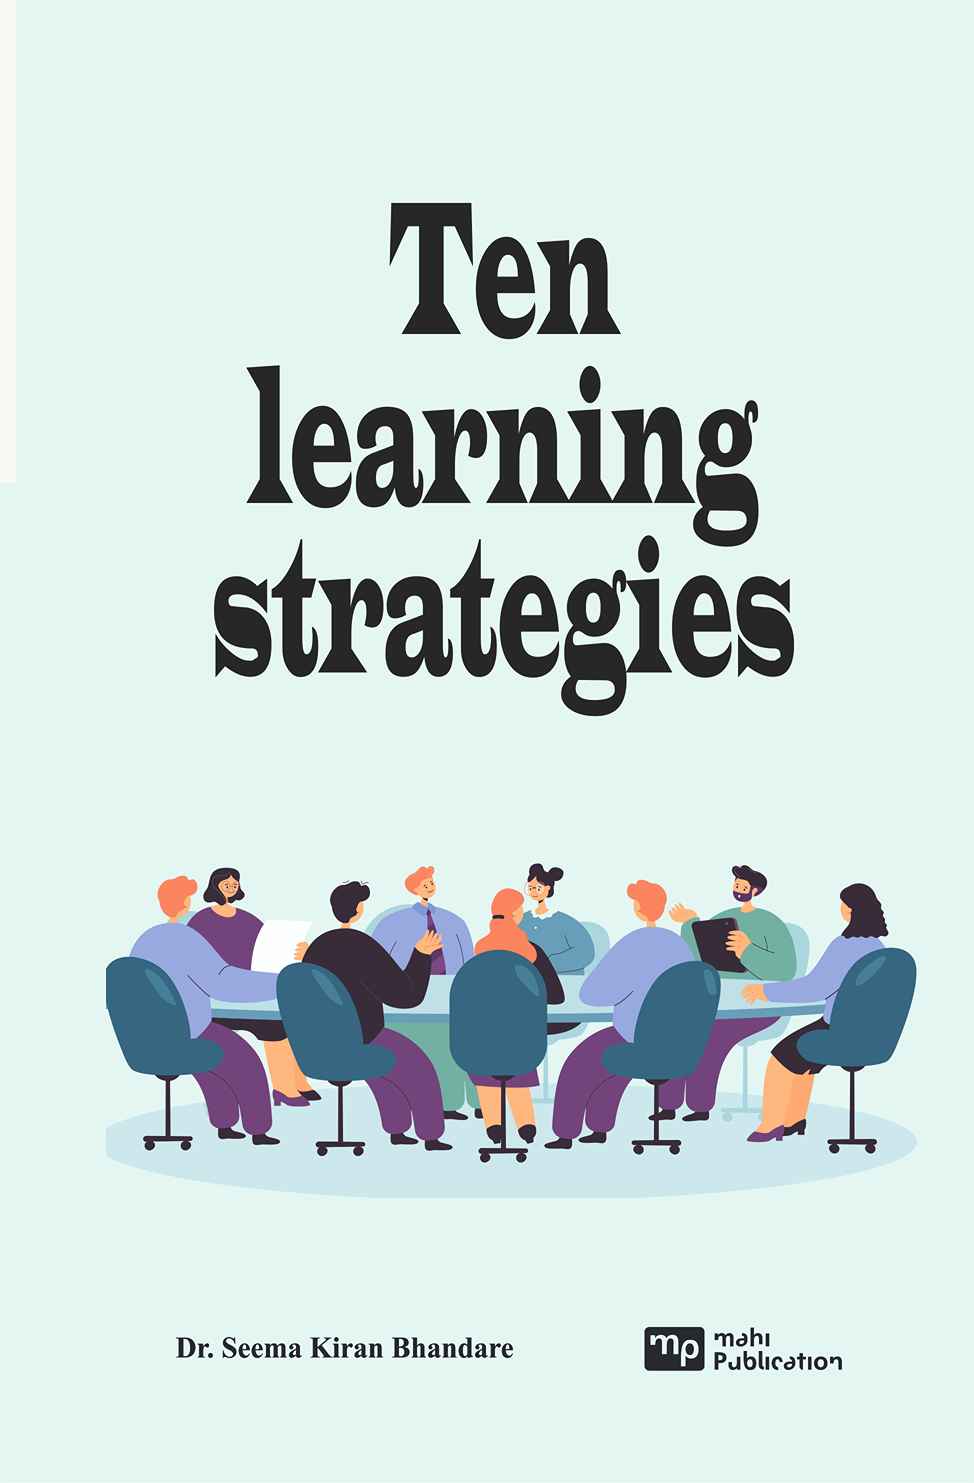 Ten learning strategies